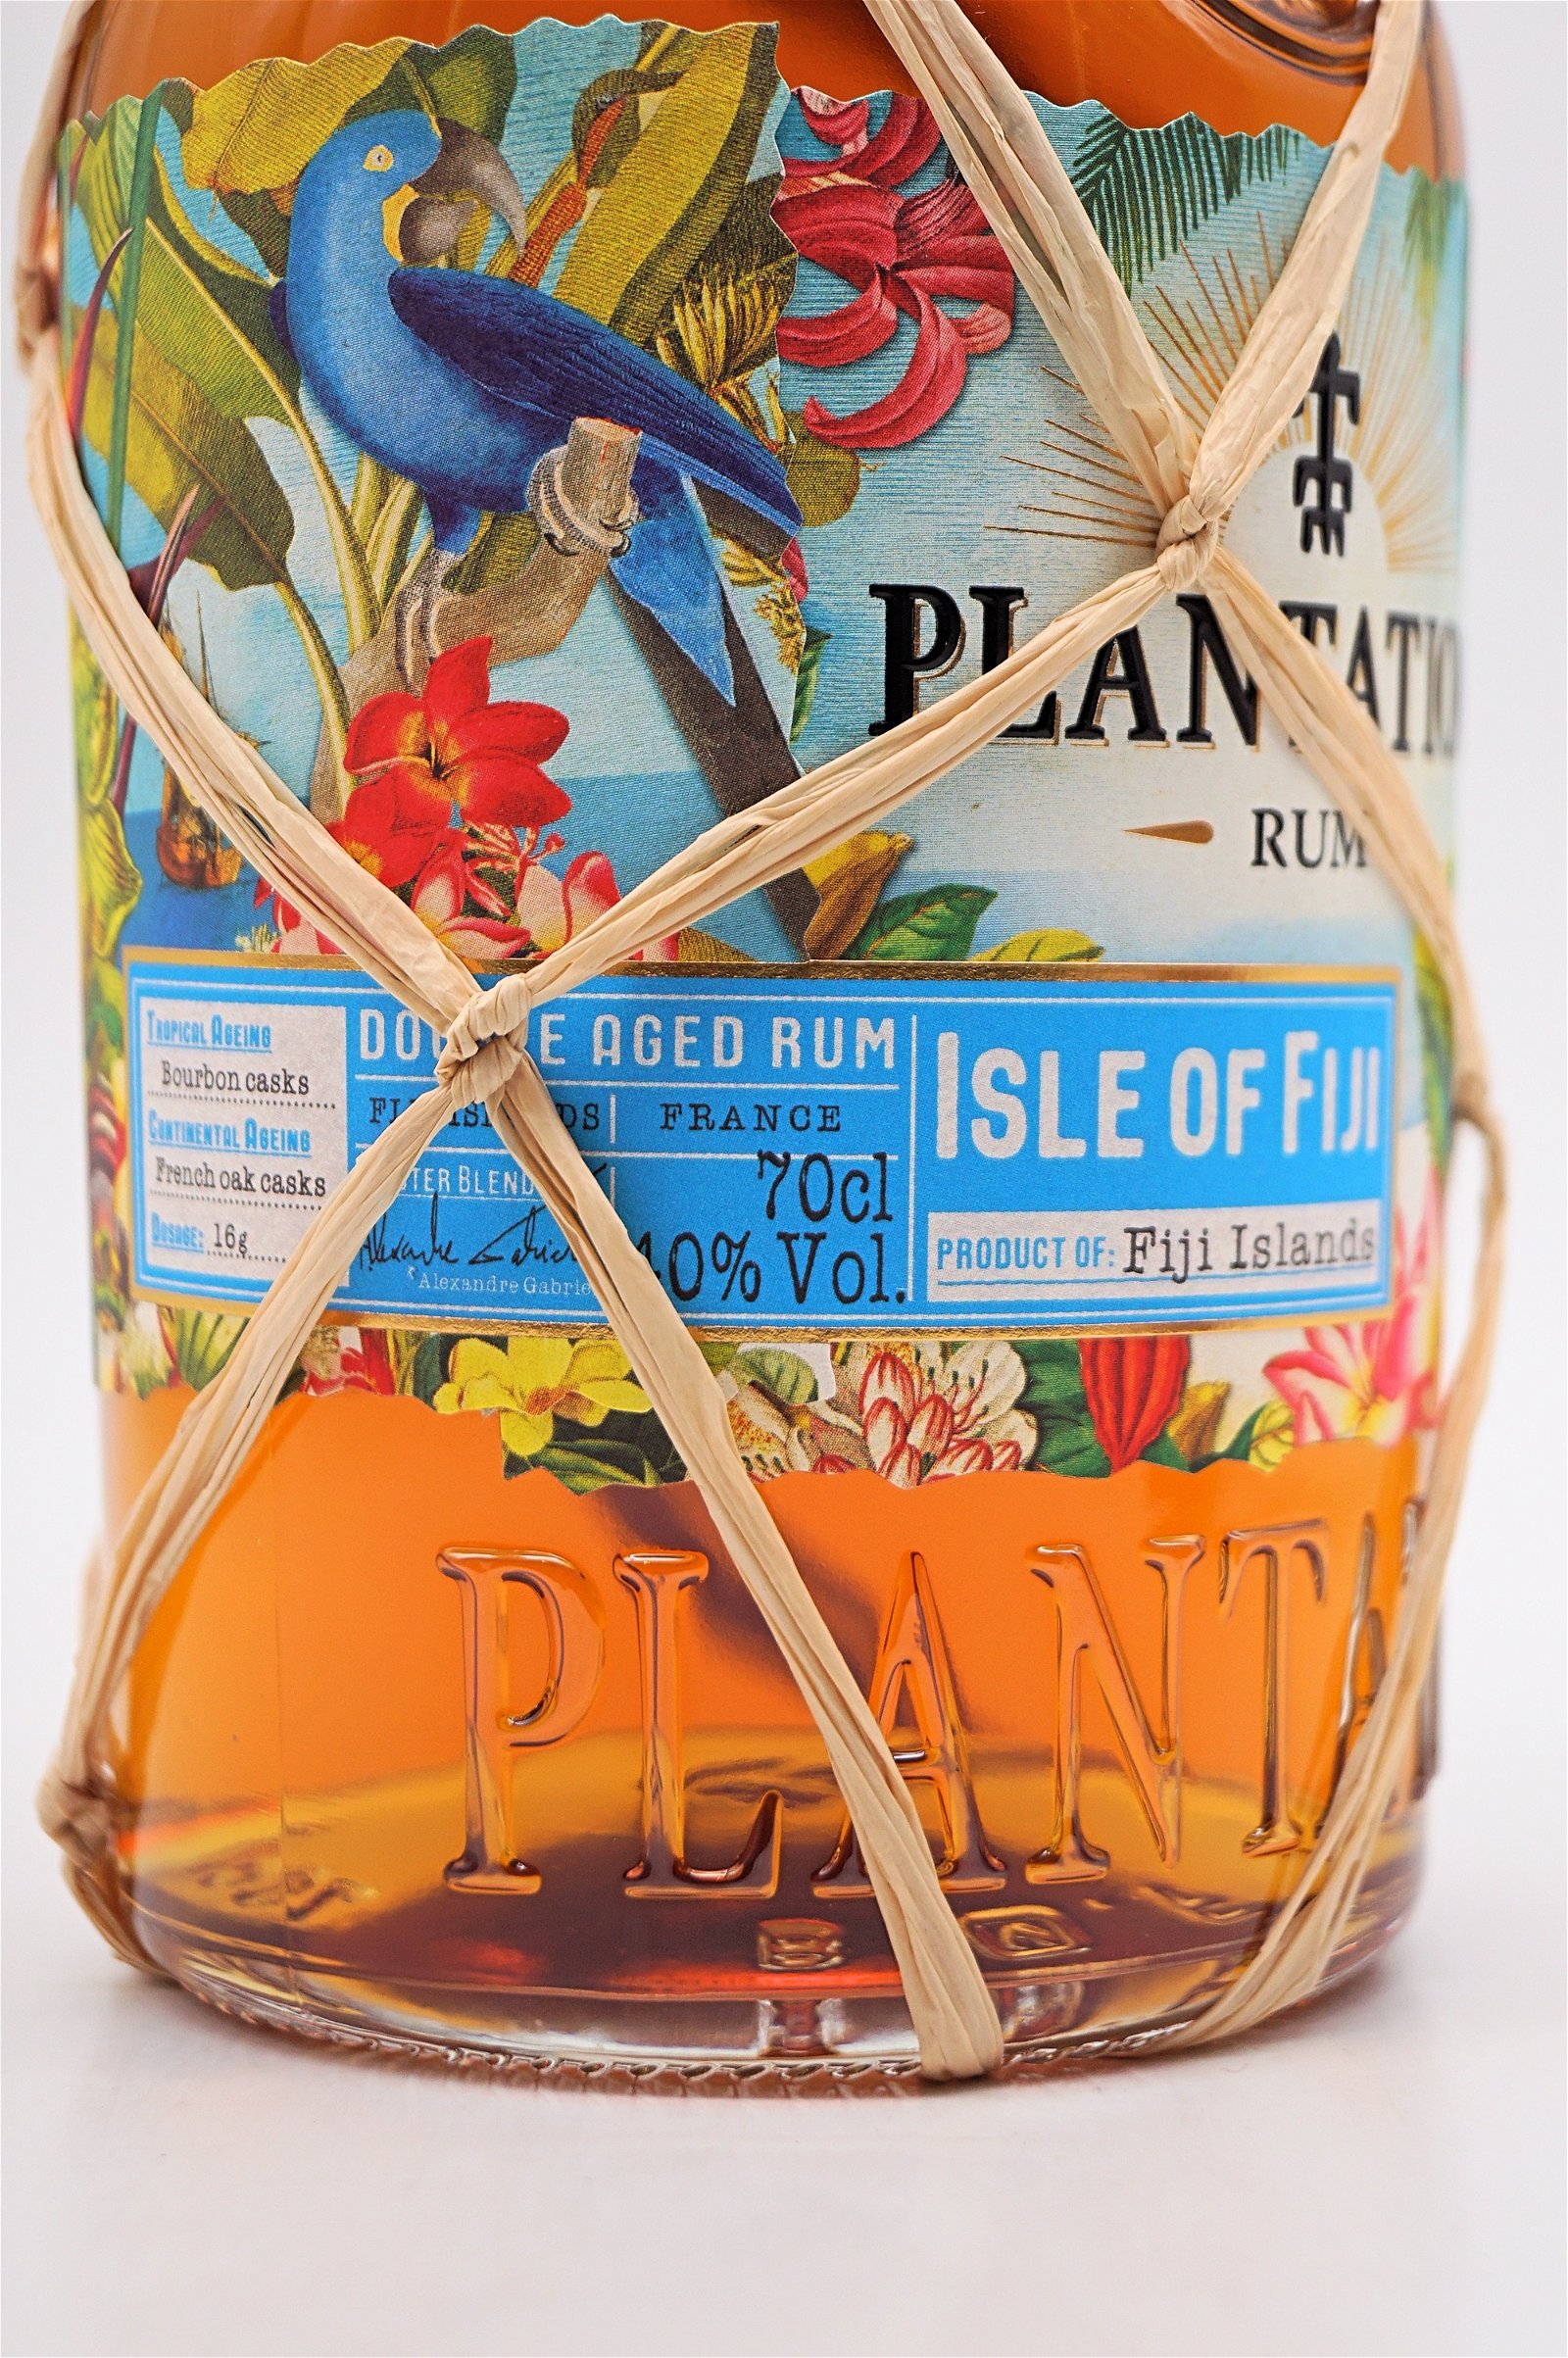 Plantation Rum Isle of Fiji Double Aged Rum